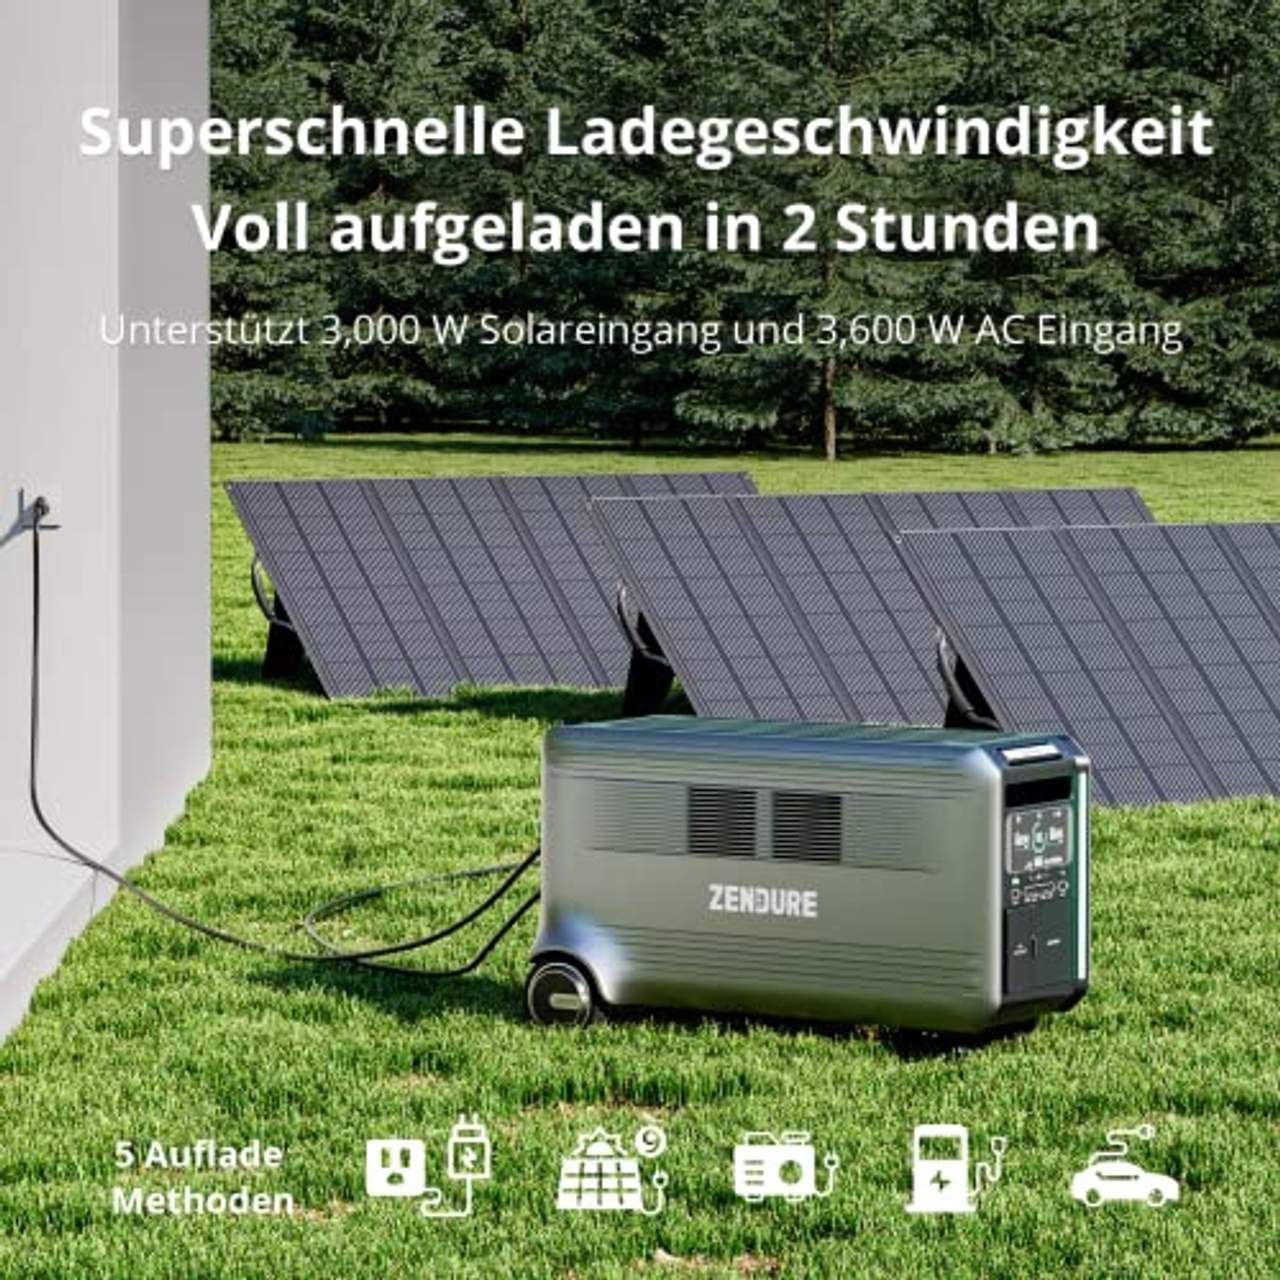 Zendure SuperBaseV6400 Solar Powerstation